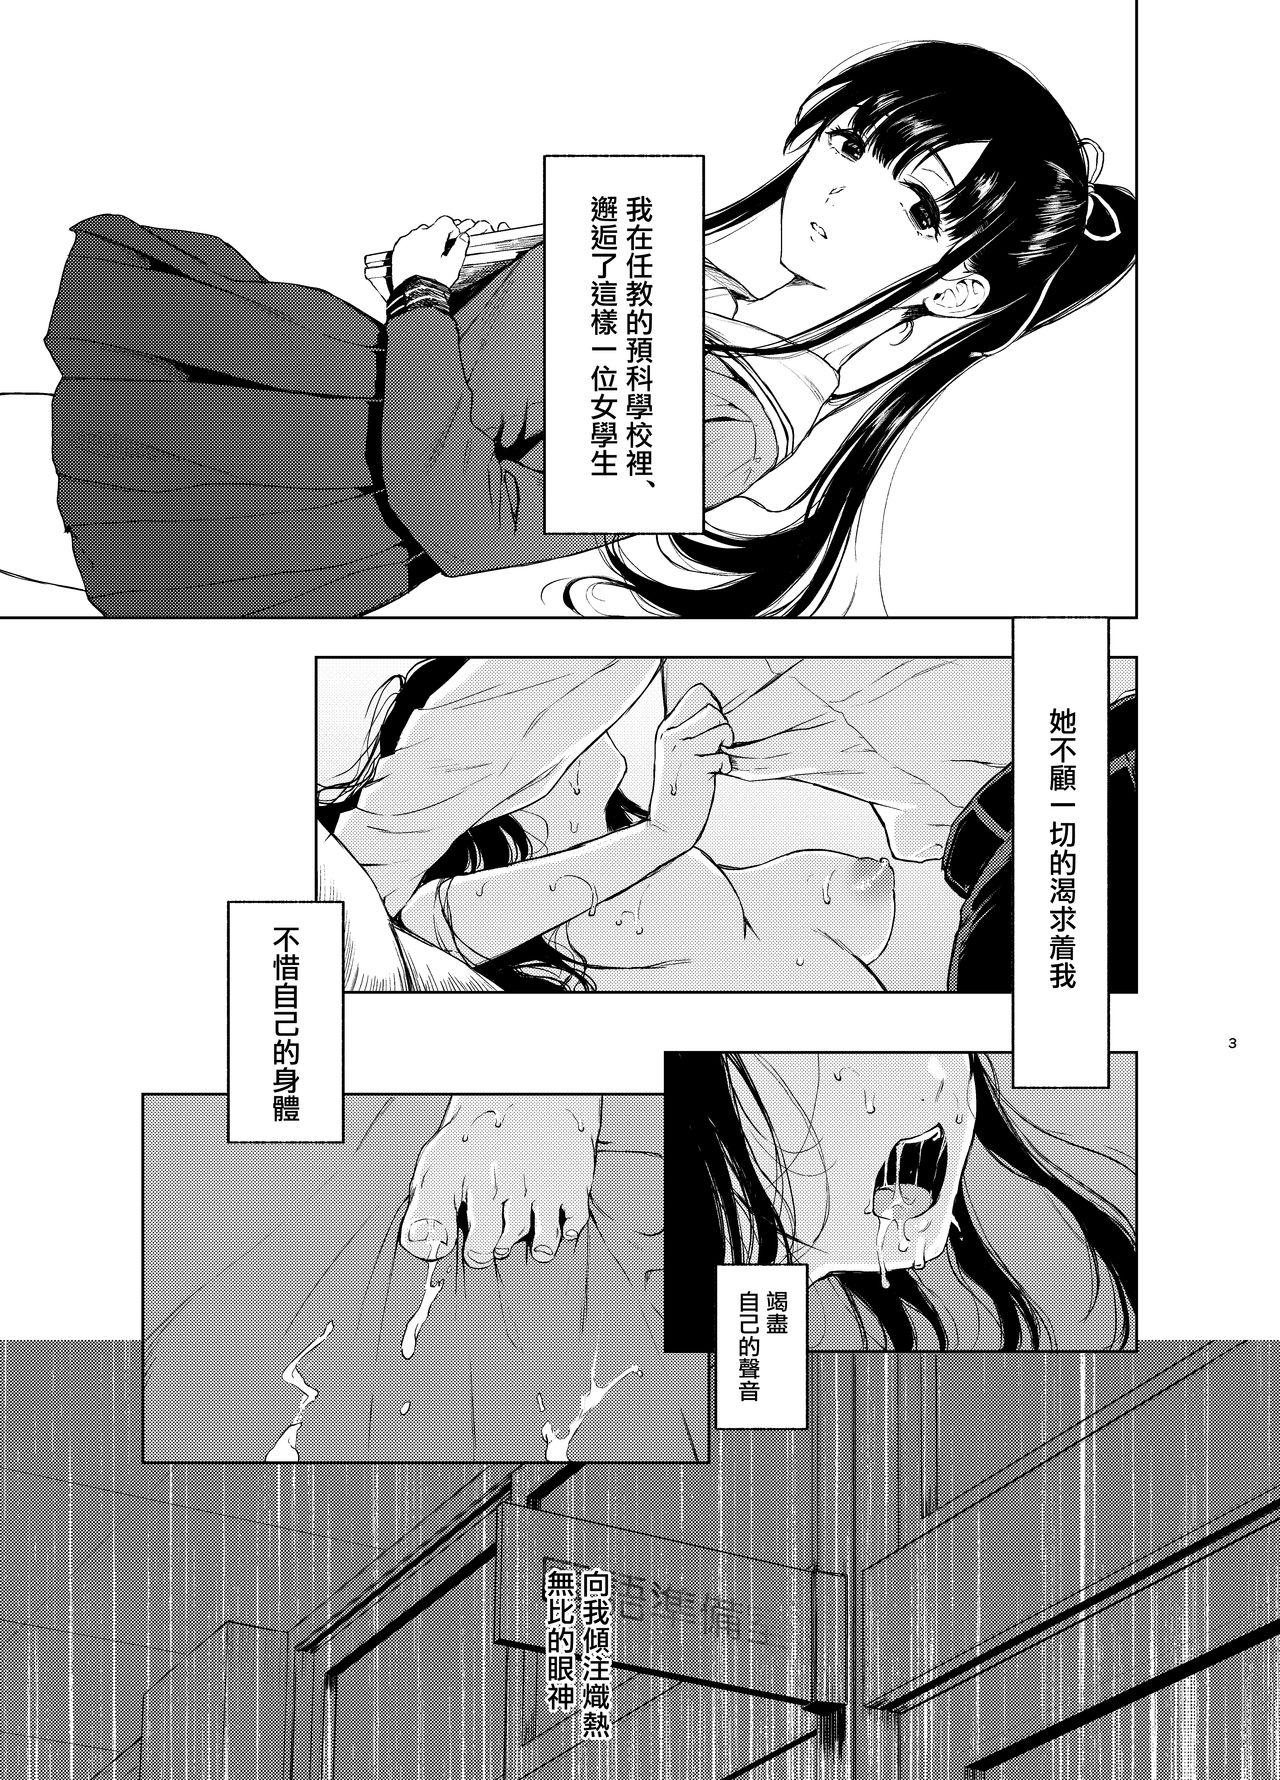 Cumfacial Sokubakuai 3 - Original Hot Mom - Page 3